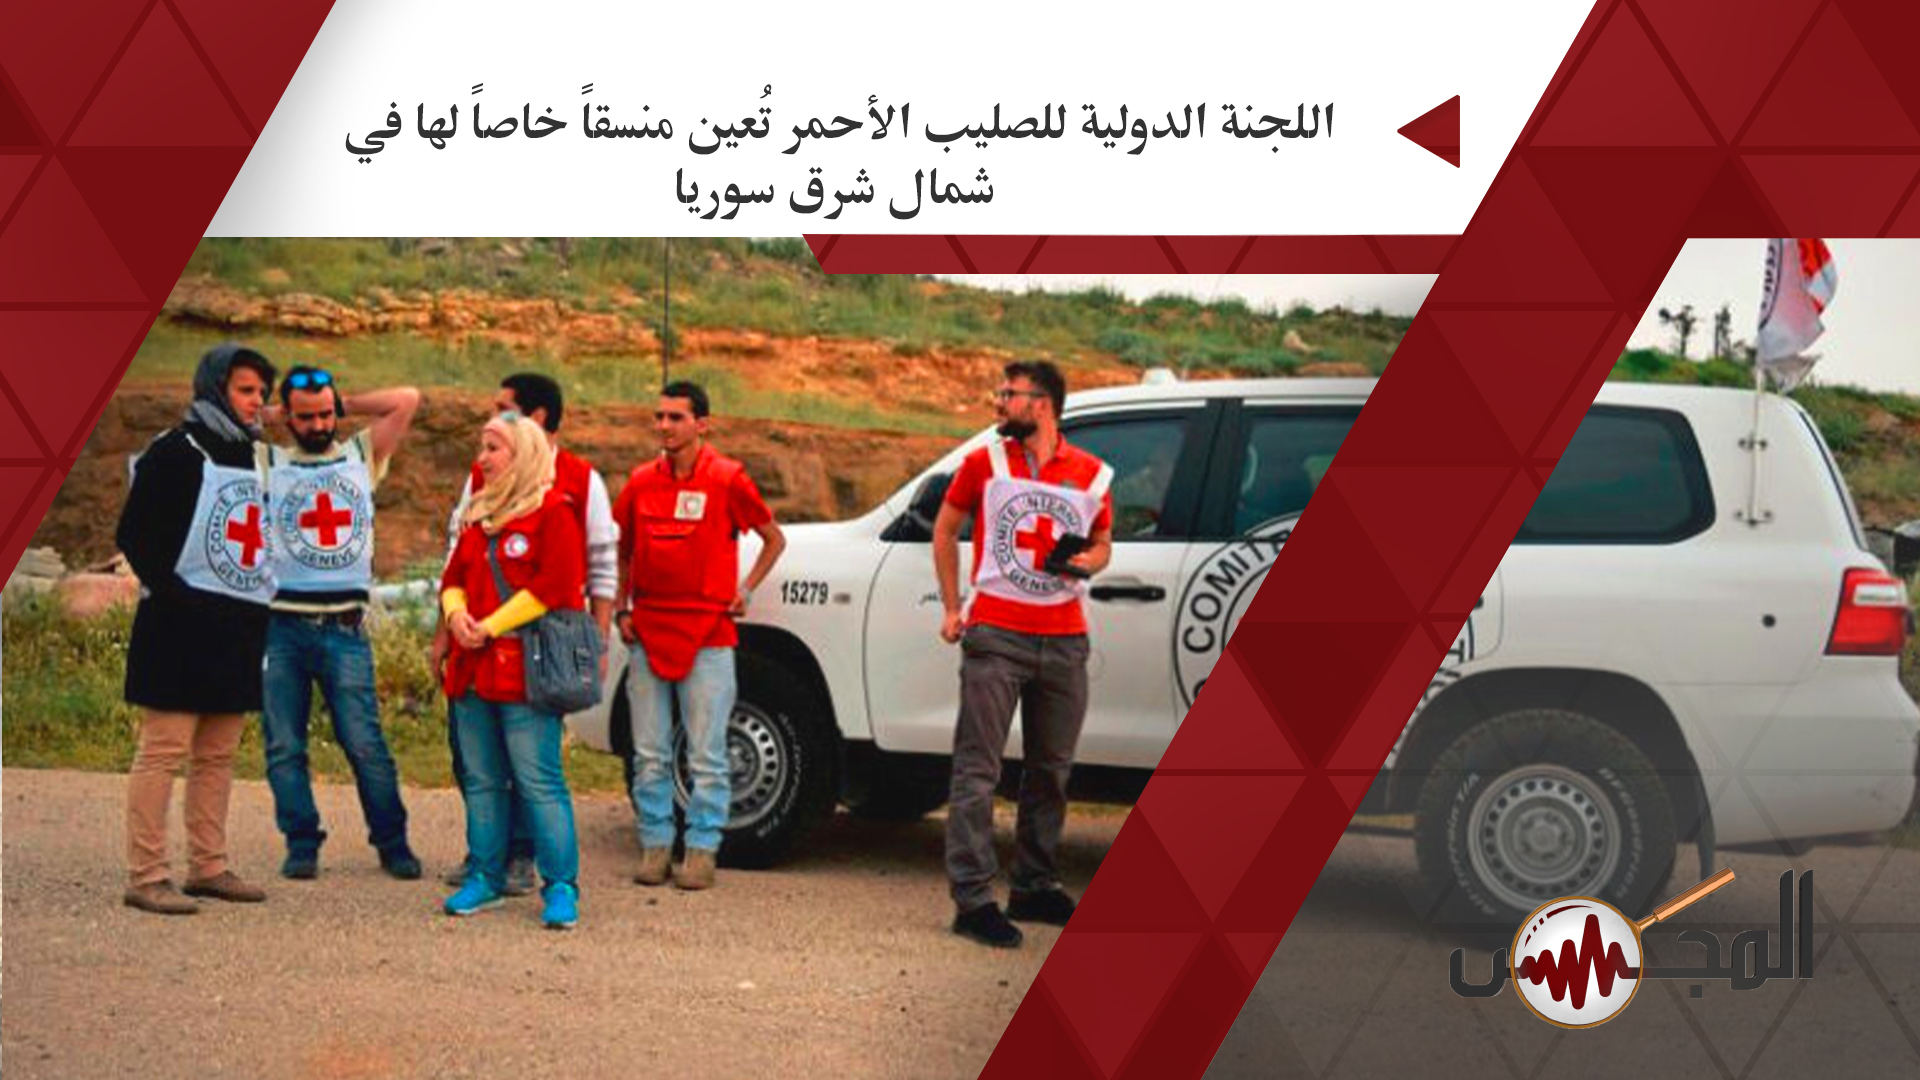 اللجنة الدولية للصليب الأحمر تُعين منسقاً خاصاً لها في شمال شرق سوريا